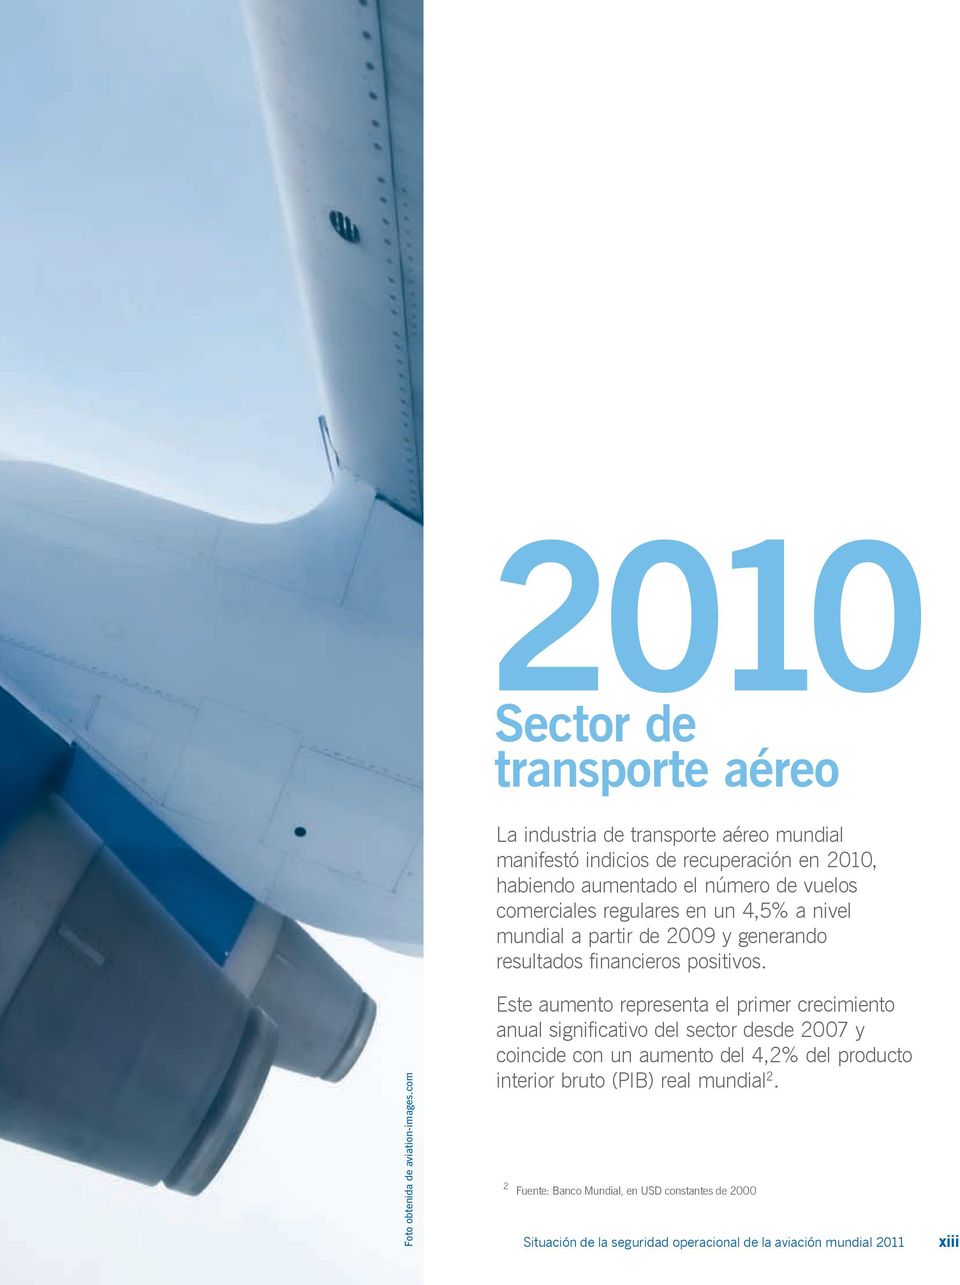 de vuelos comerciales regulares en un 4,5% a nivel mundial a partir de 2009 y generando resultados financieros positivos.